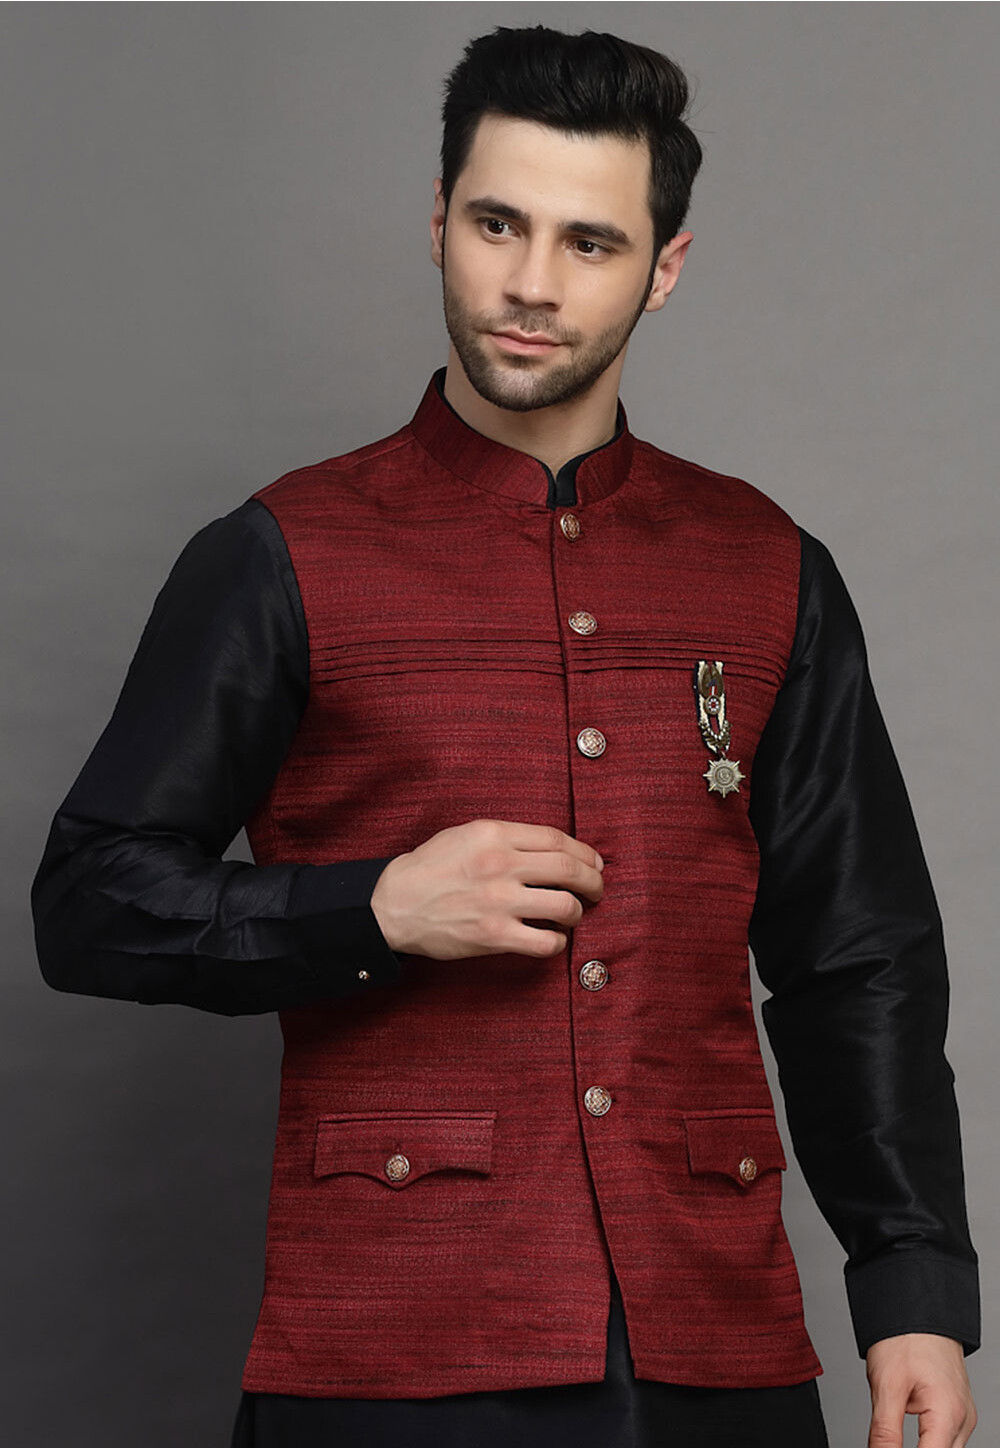 Umber Maroon Textured Premium Wool-Blend Wedding Nehru Jackets For Men.